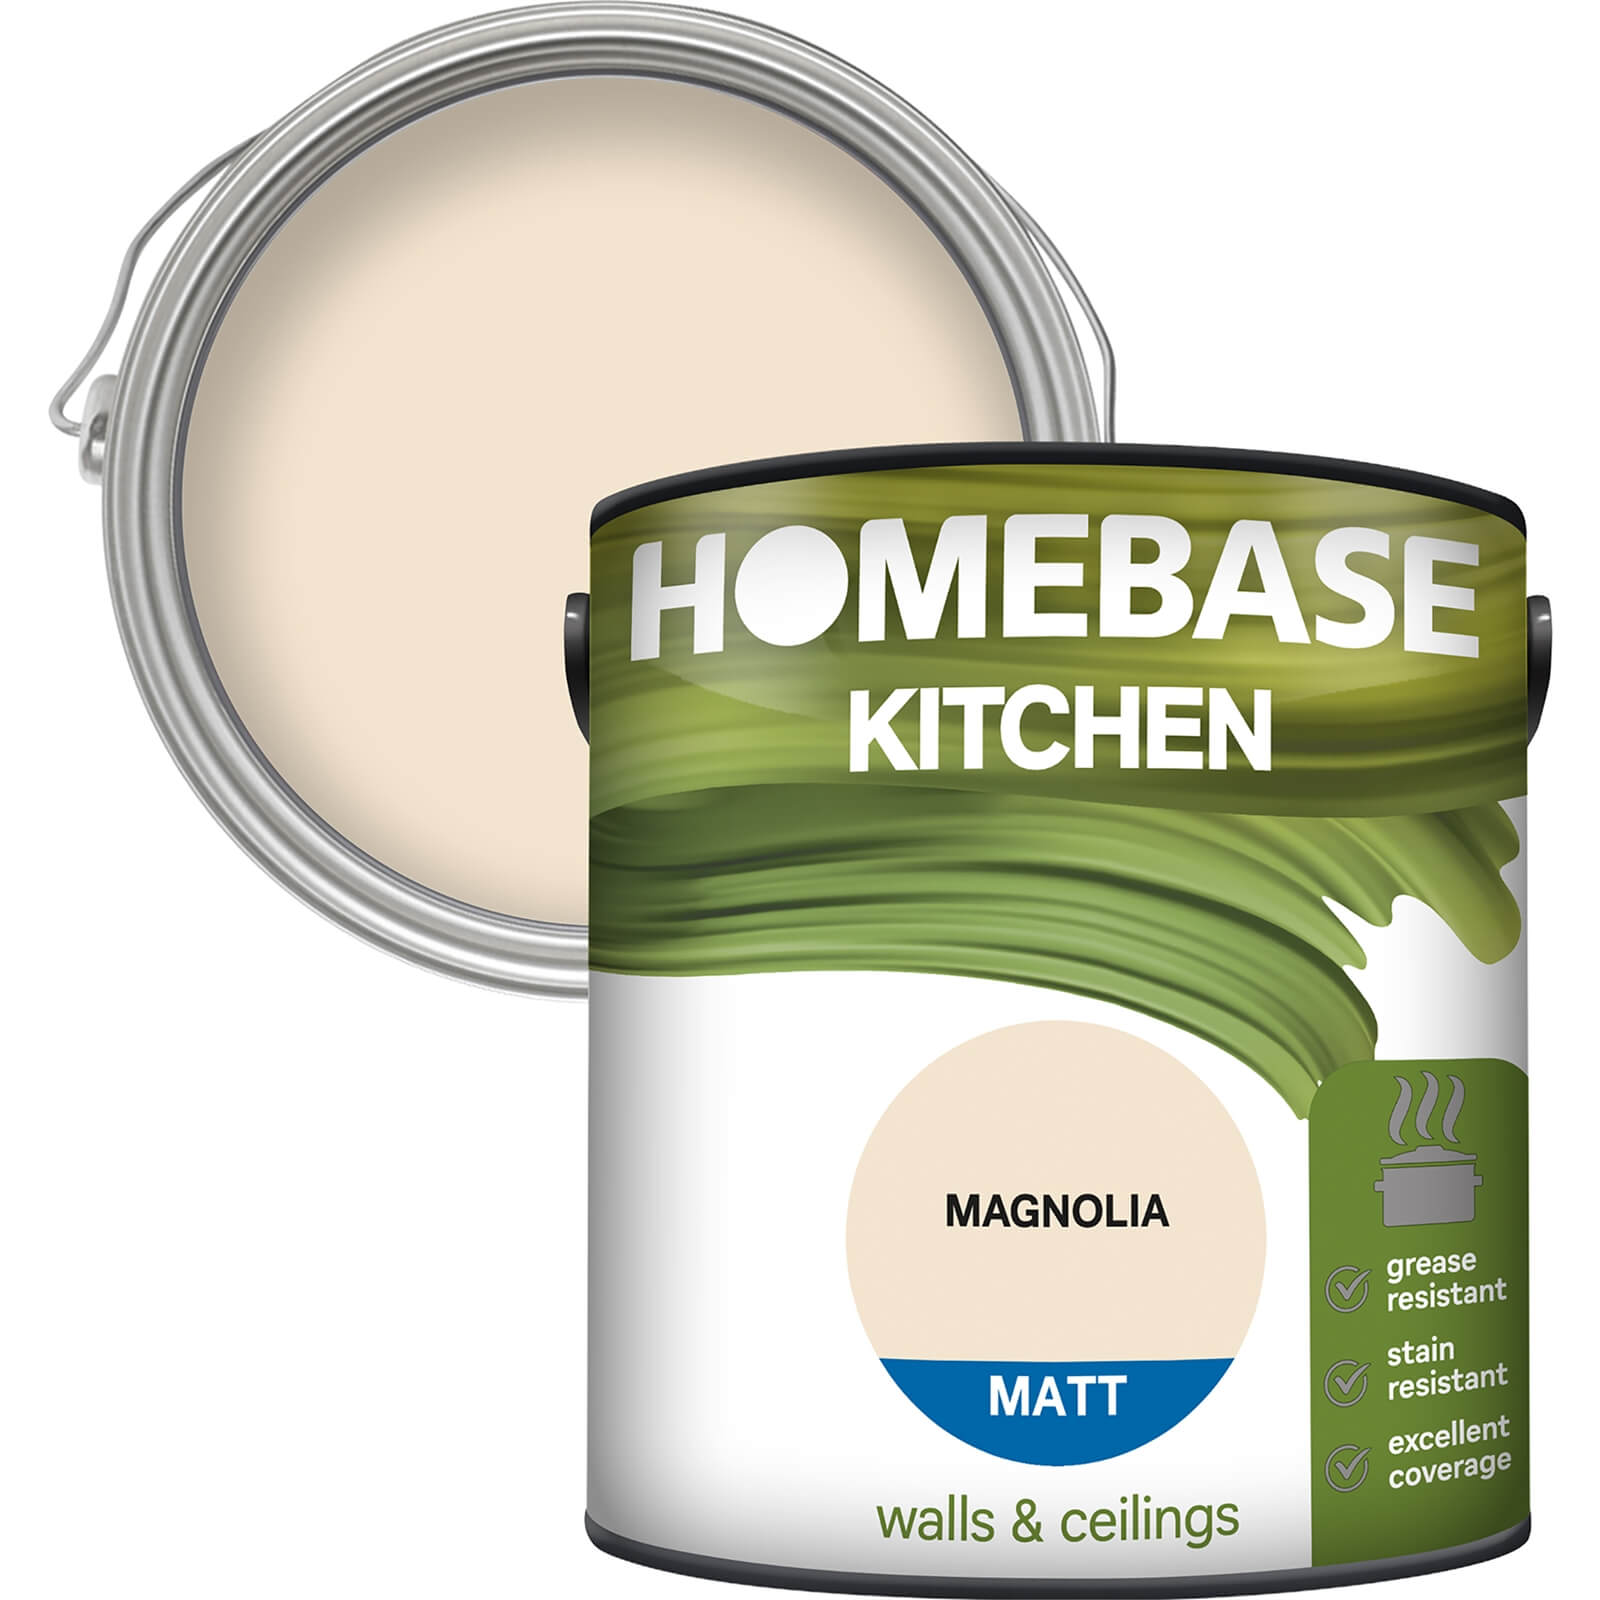 Homebase Kitchen Matt Paint - Magnolia 2.5L